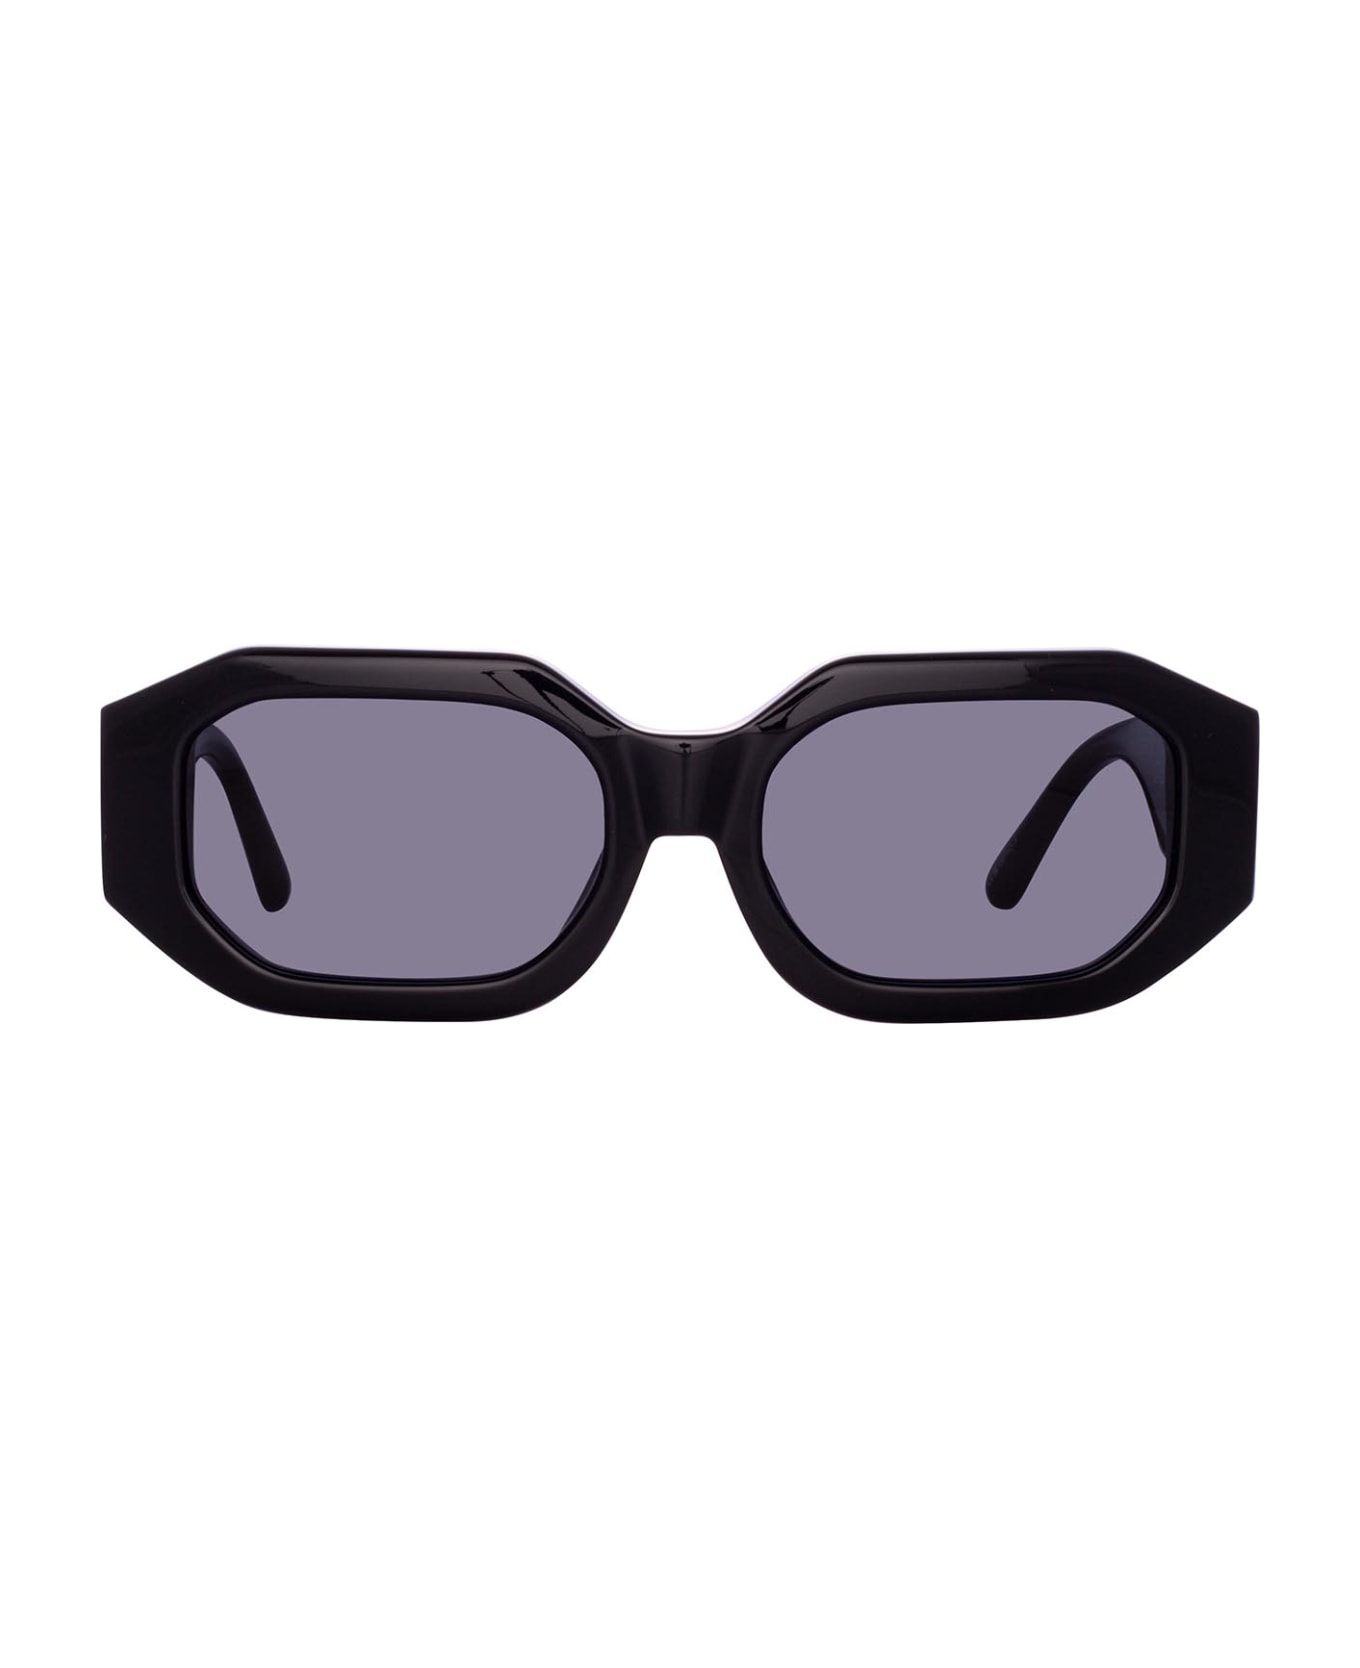 Linda Farrow Attico45 Black / Silver Sunglasses - Black / Silver